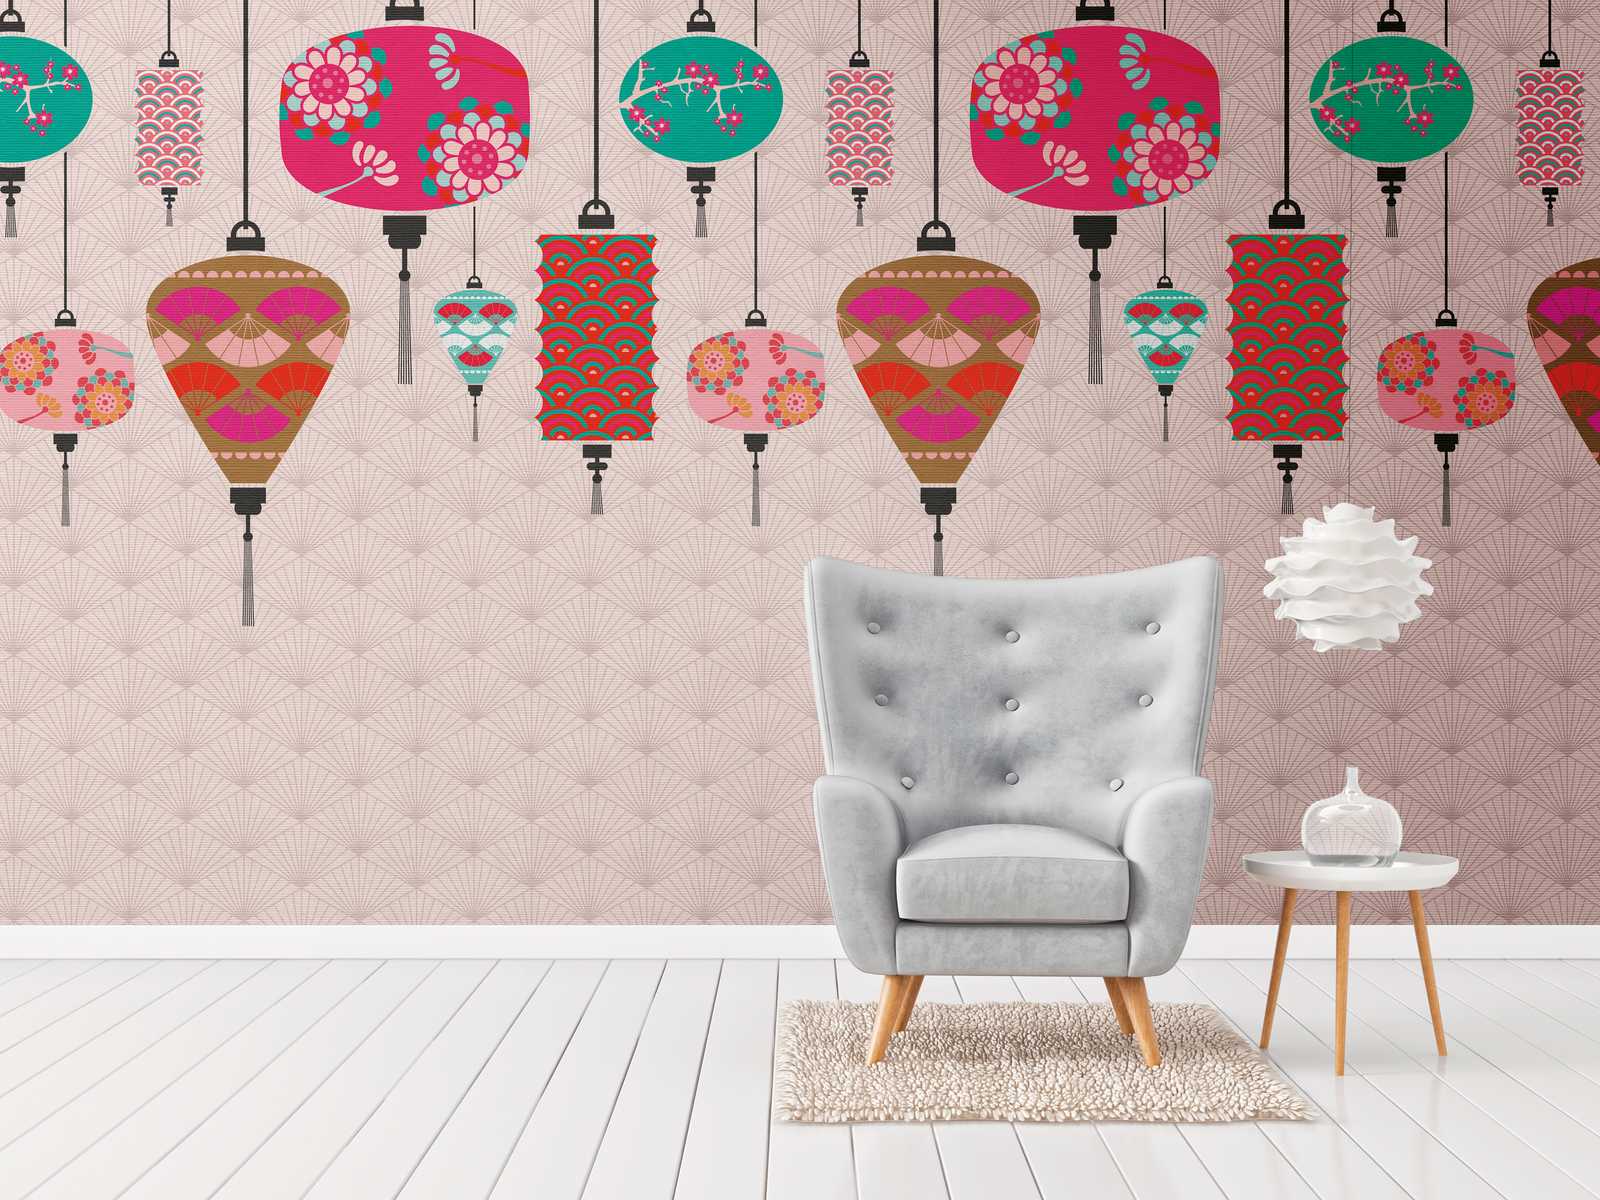             Nieuw behangpapier | Aziatisch motief behang met kleurrijke lantaarns
        